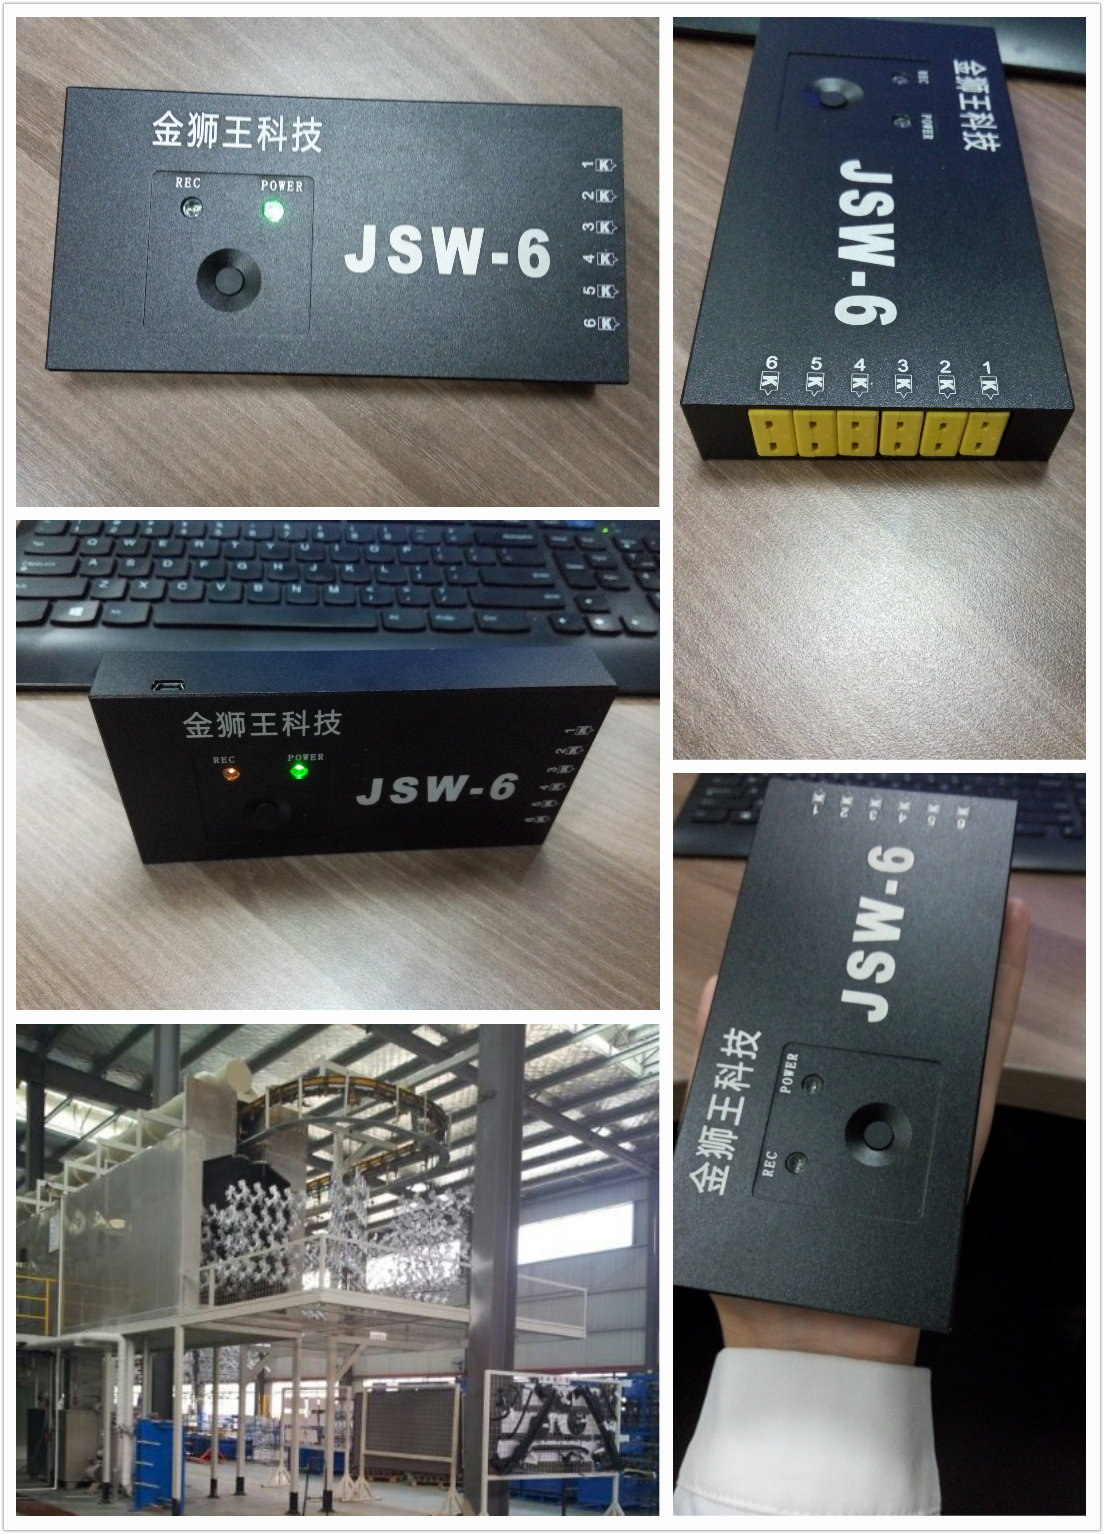 JSW炉温测试仪主要用在哪些地方应用